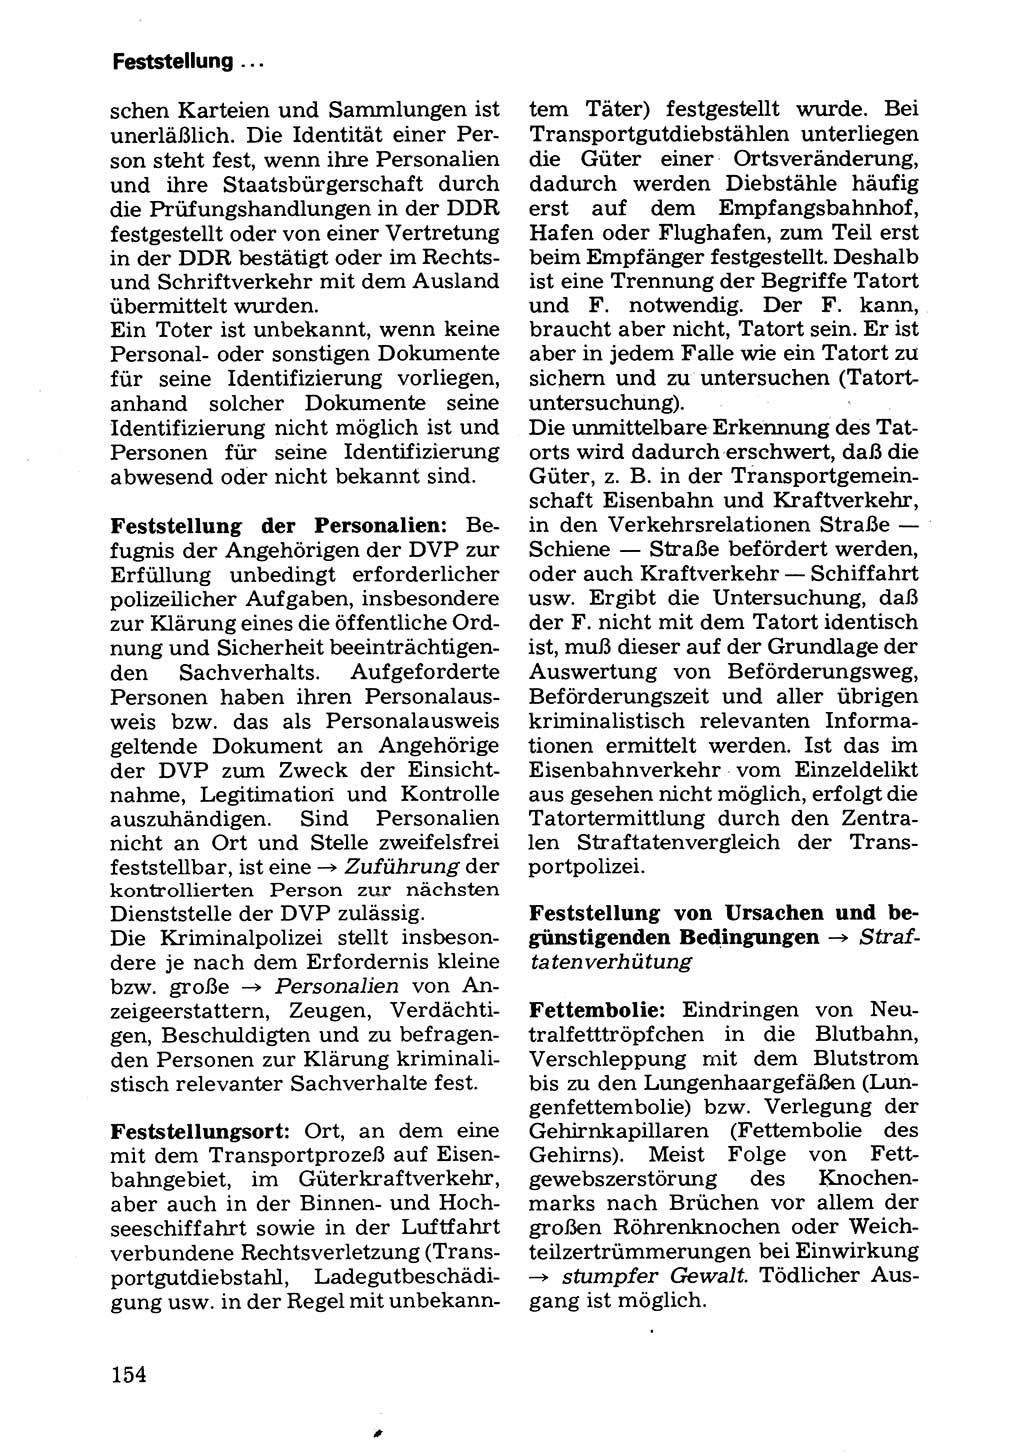 Wörterbuch der sozialistischen Kriminalistik [Deutsche Demokratische Republik (DDR)] 1981, Seite 154 (Wb. soz. Krim. DDR 1981, S. 154)